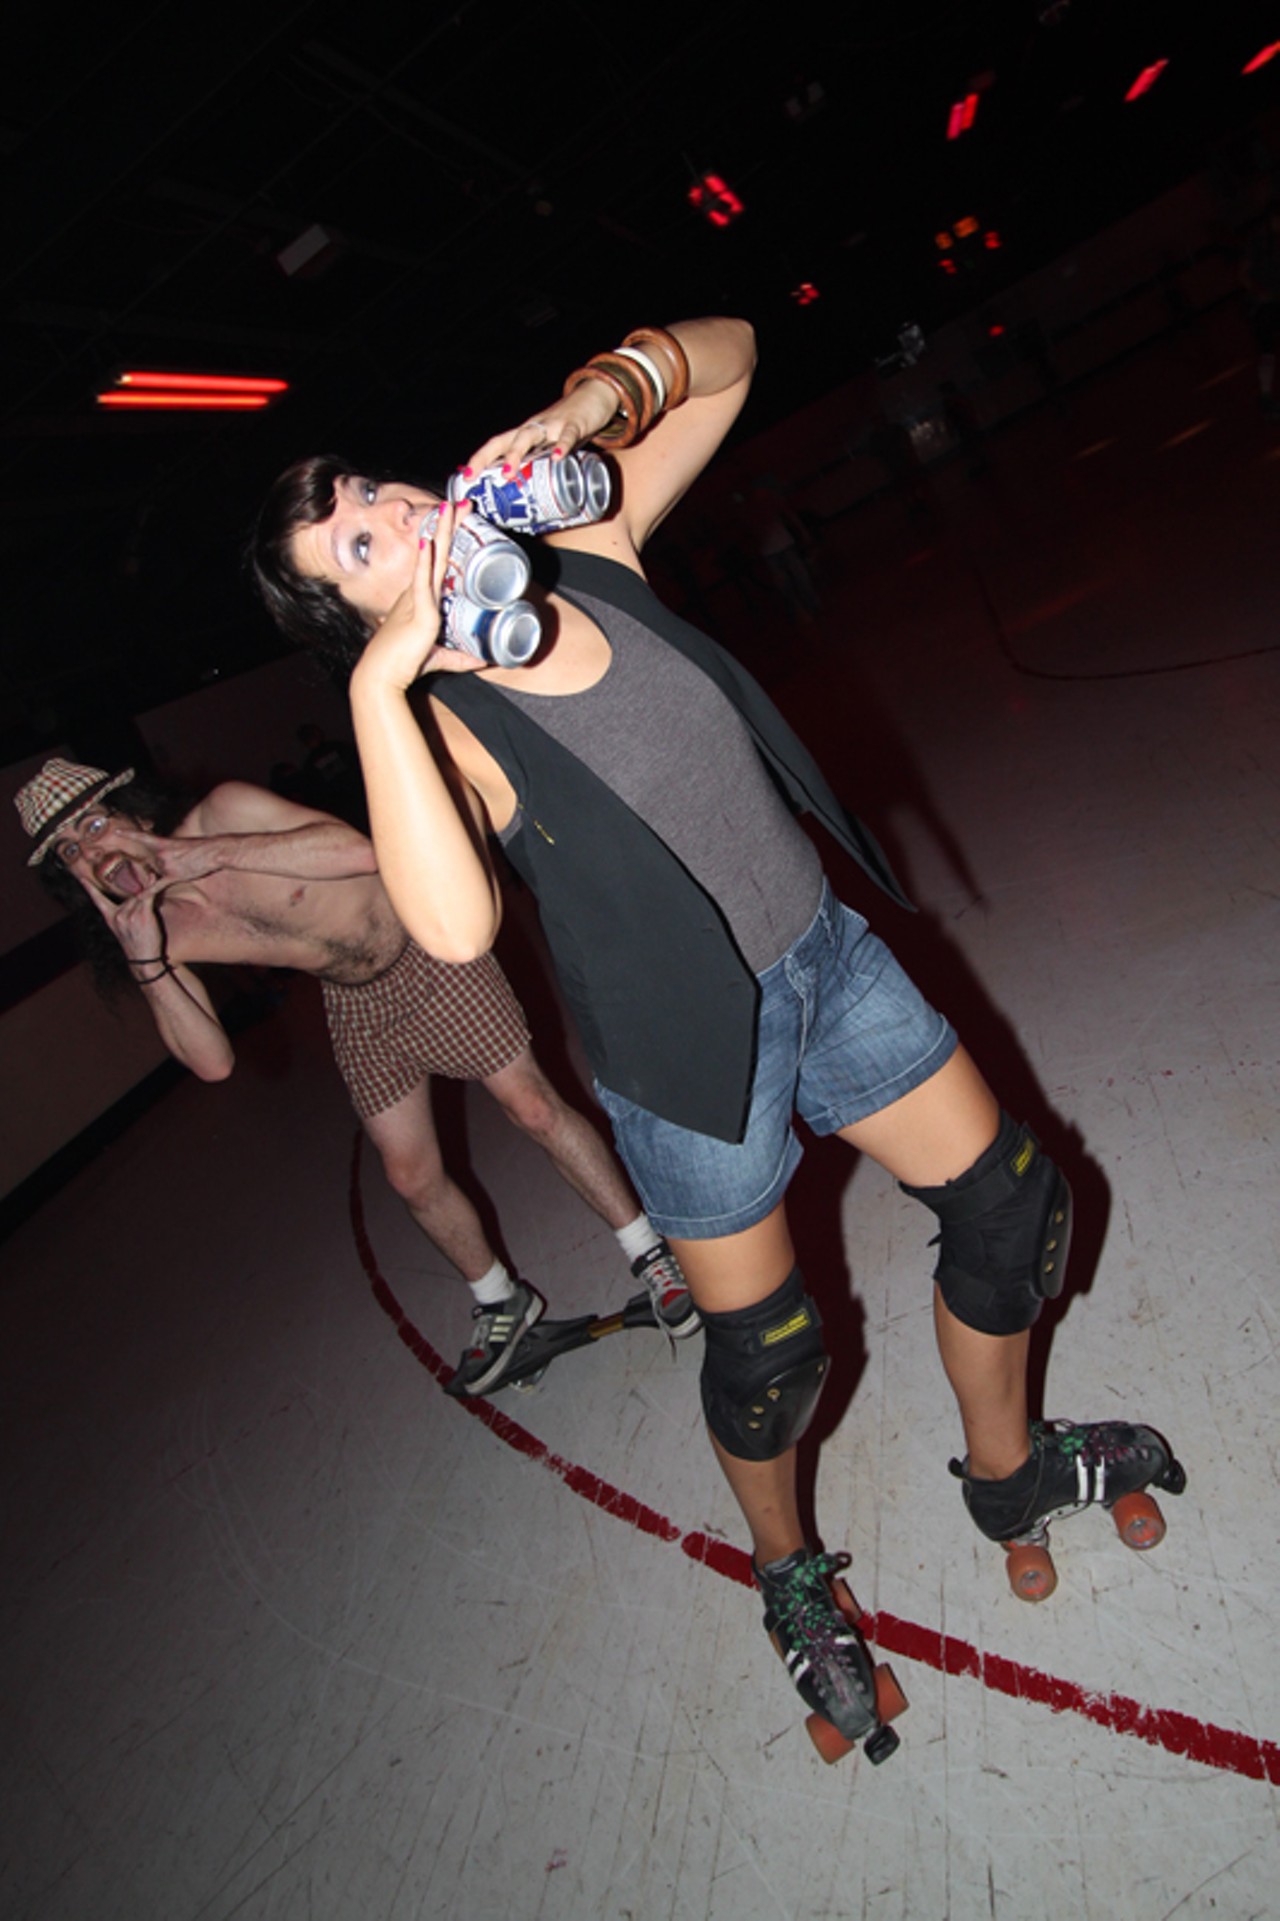 90210 Skate Party at Skatium